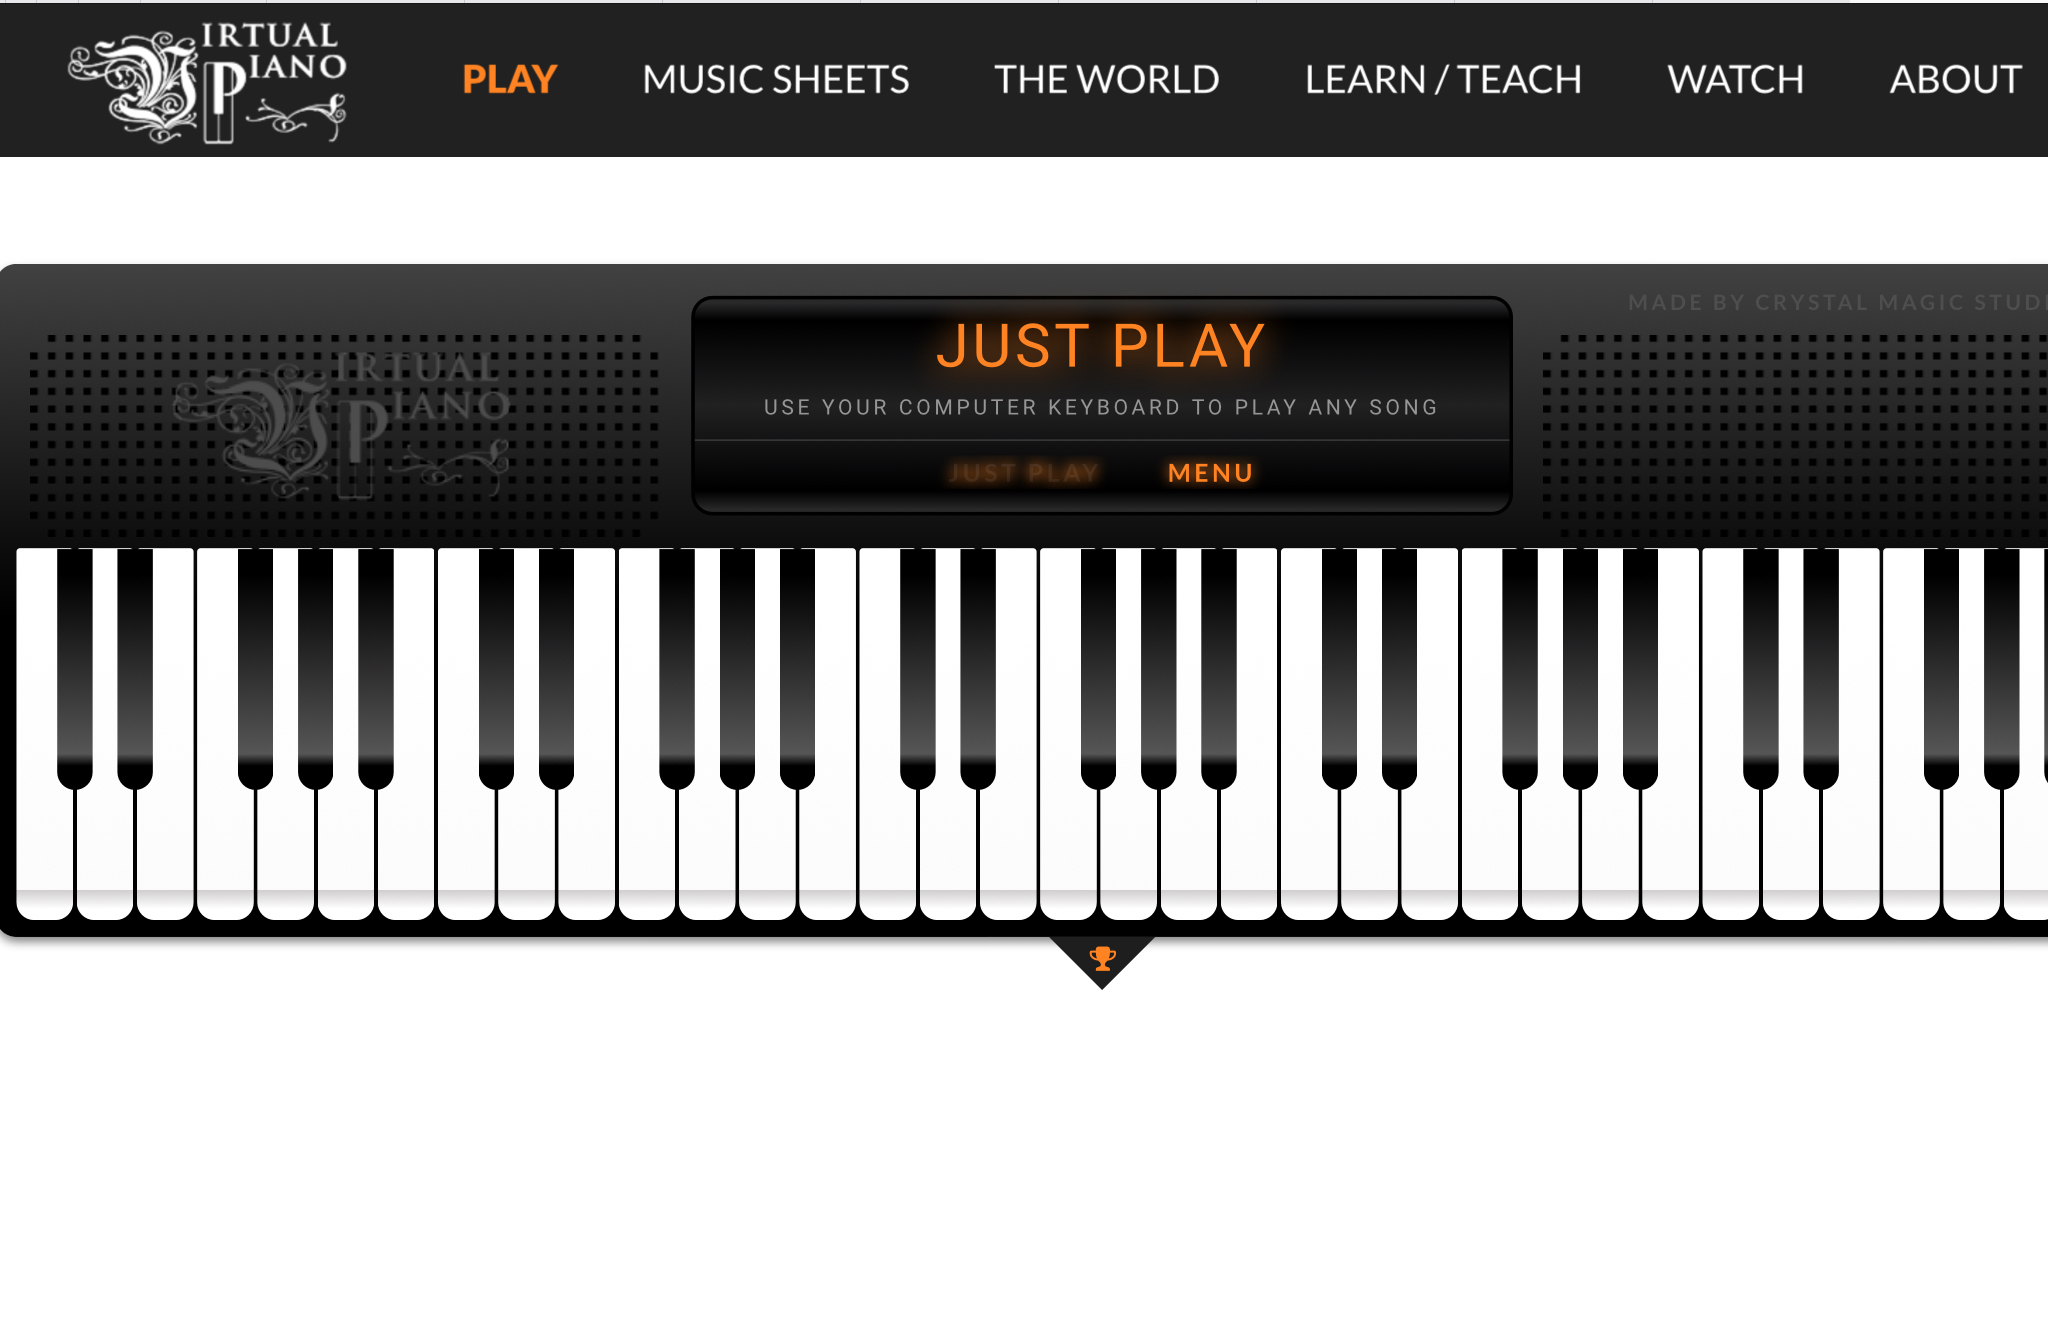 Piano play song. Виртуальное пианино. Интерактивная клавиатура пианино. Виртуальный синтезатор.